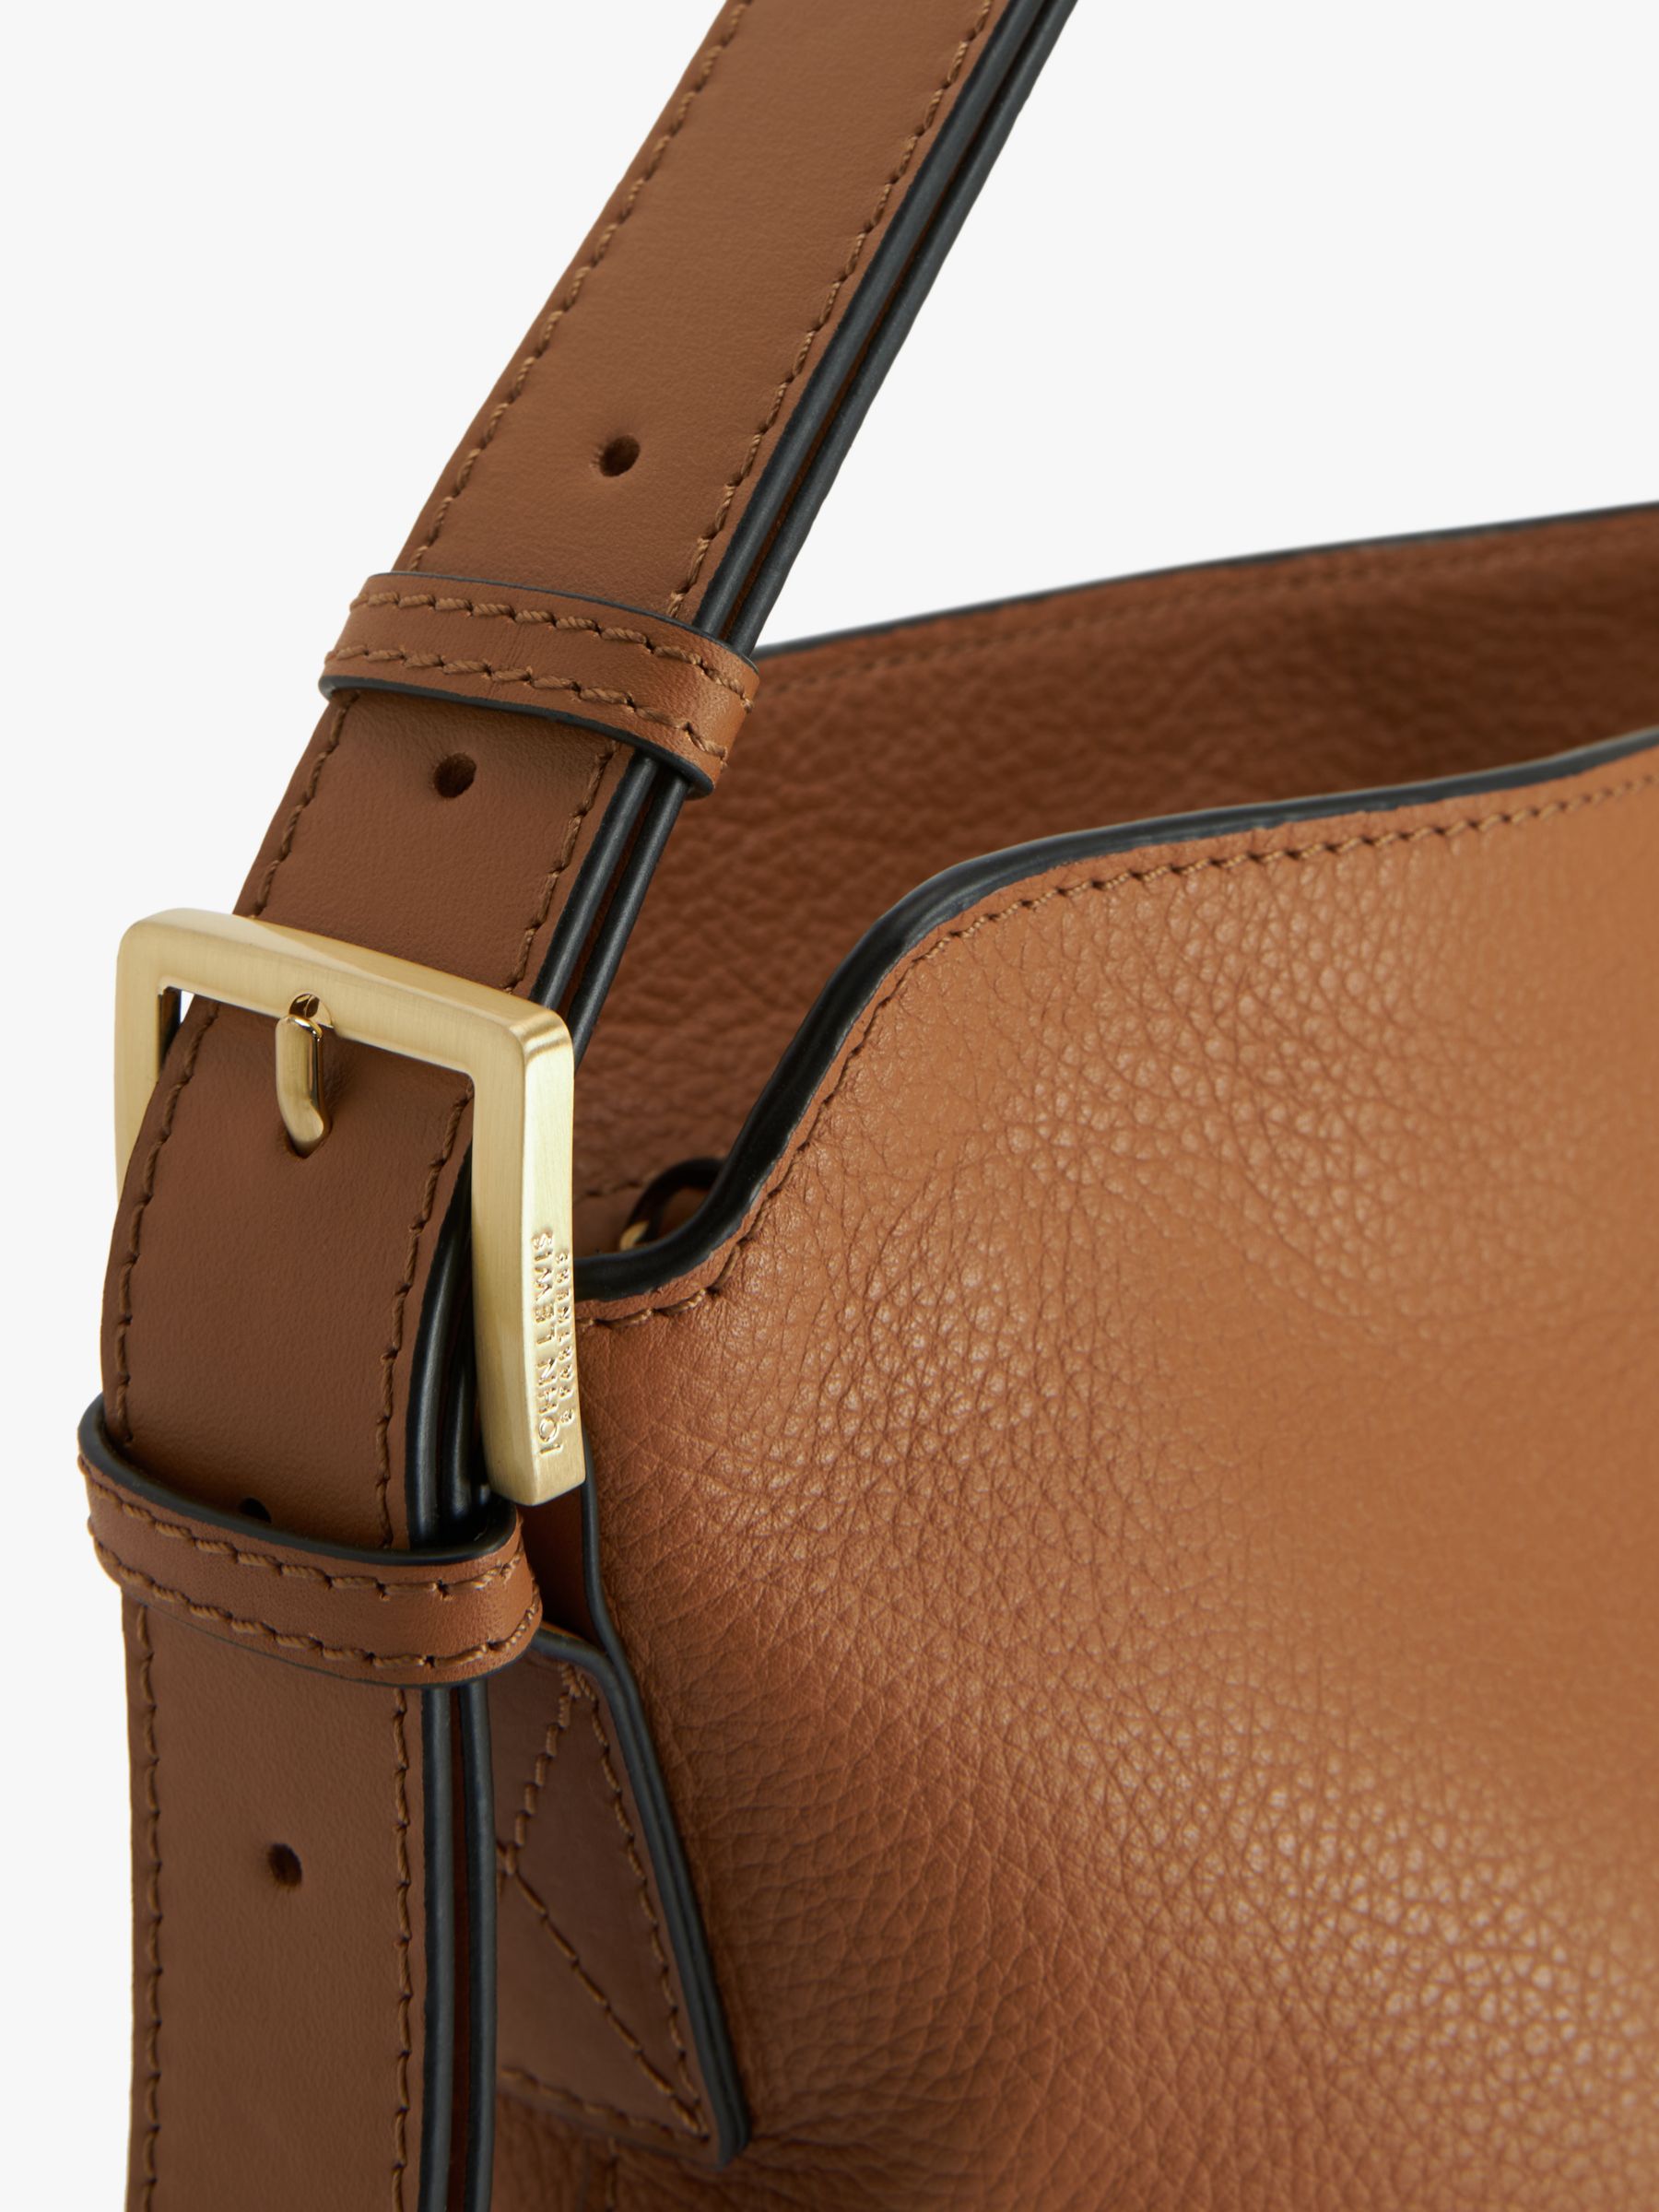 John Lewis Leather Adjustable Shoulder Bag, Tan Leather at John Lewis &  Partners